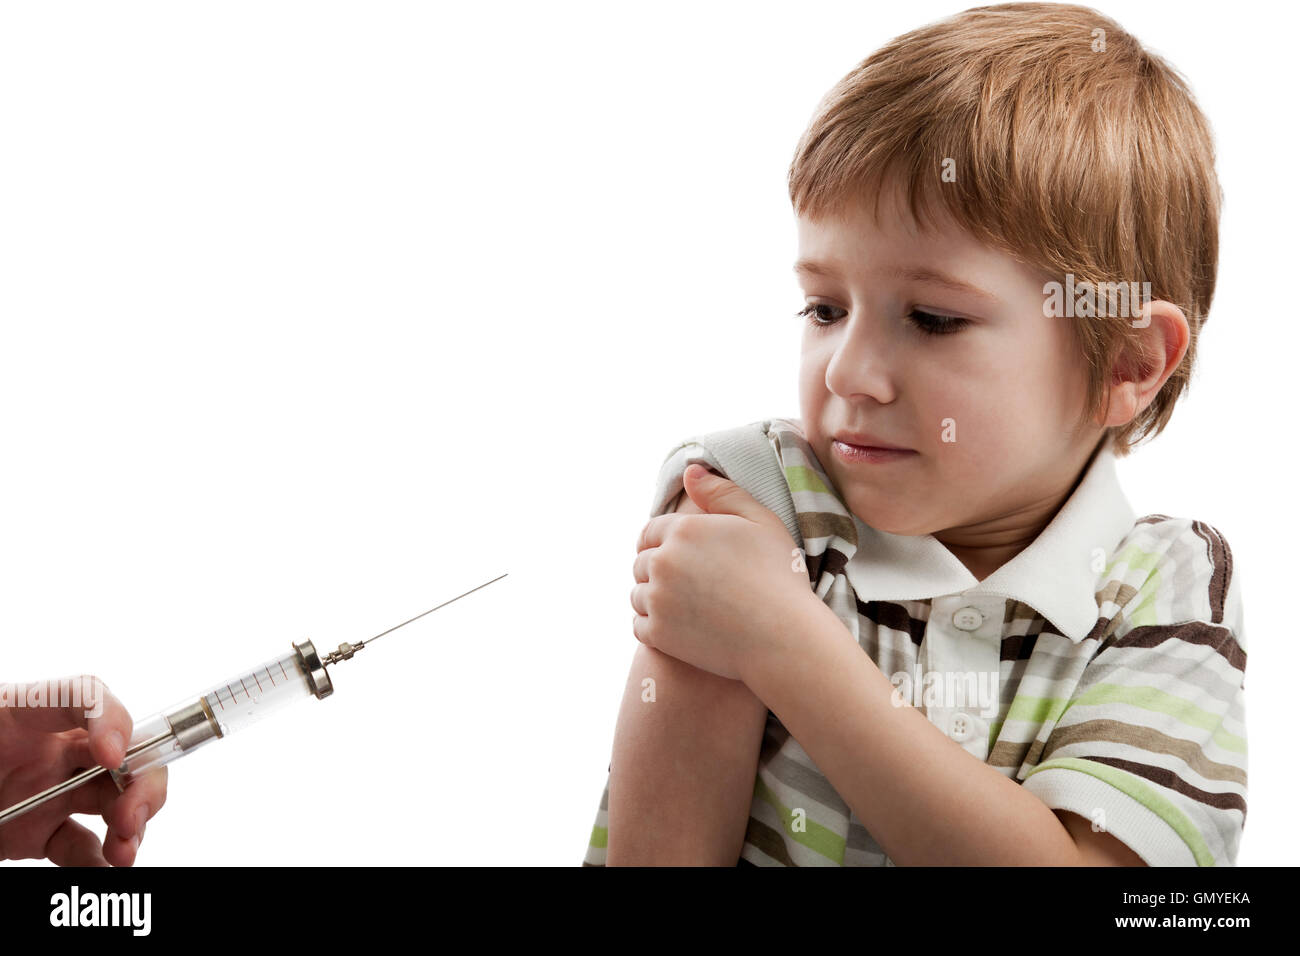 Syringe injecting child Stock Photo